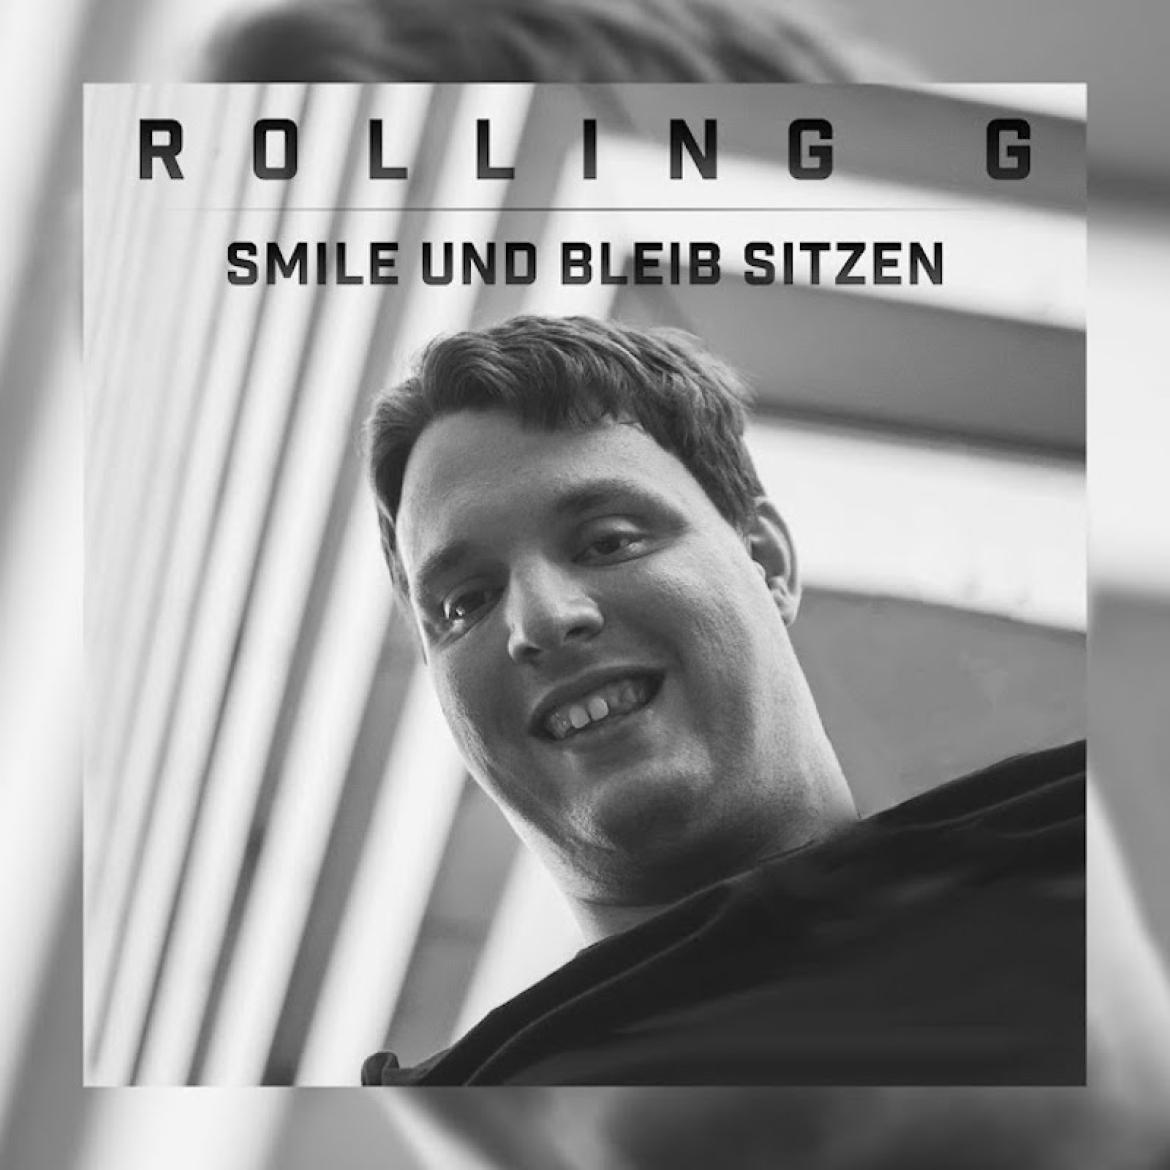 Rolling G - Smile und bleib sitzen